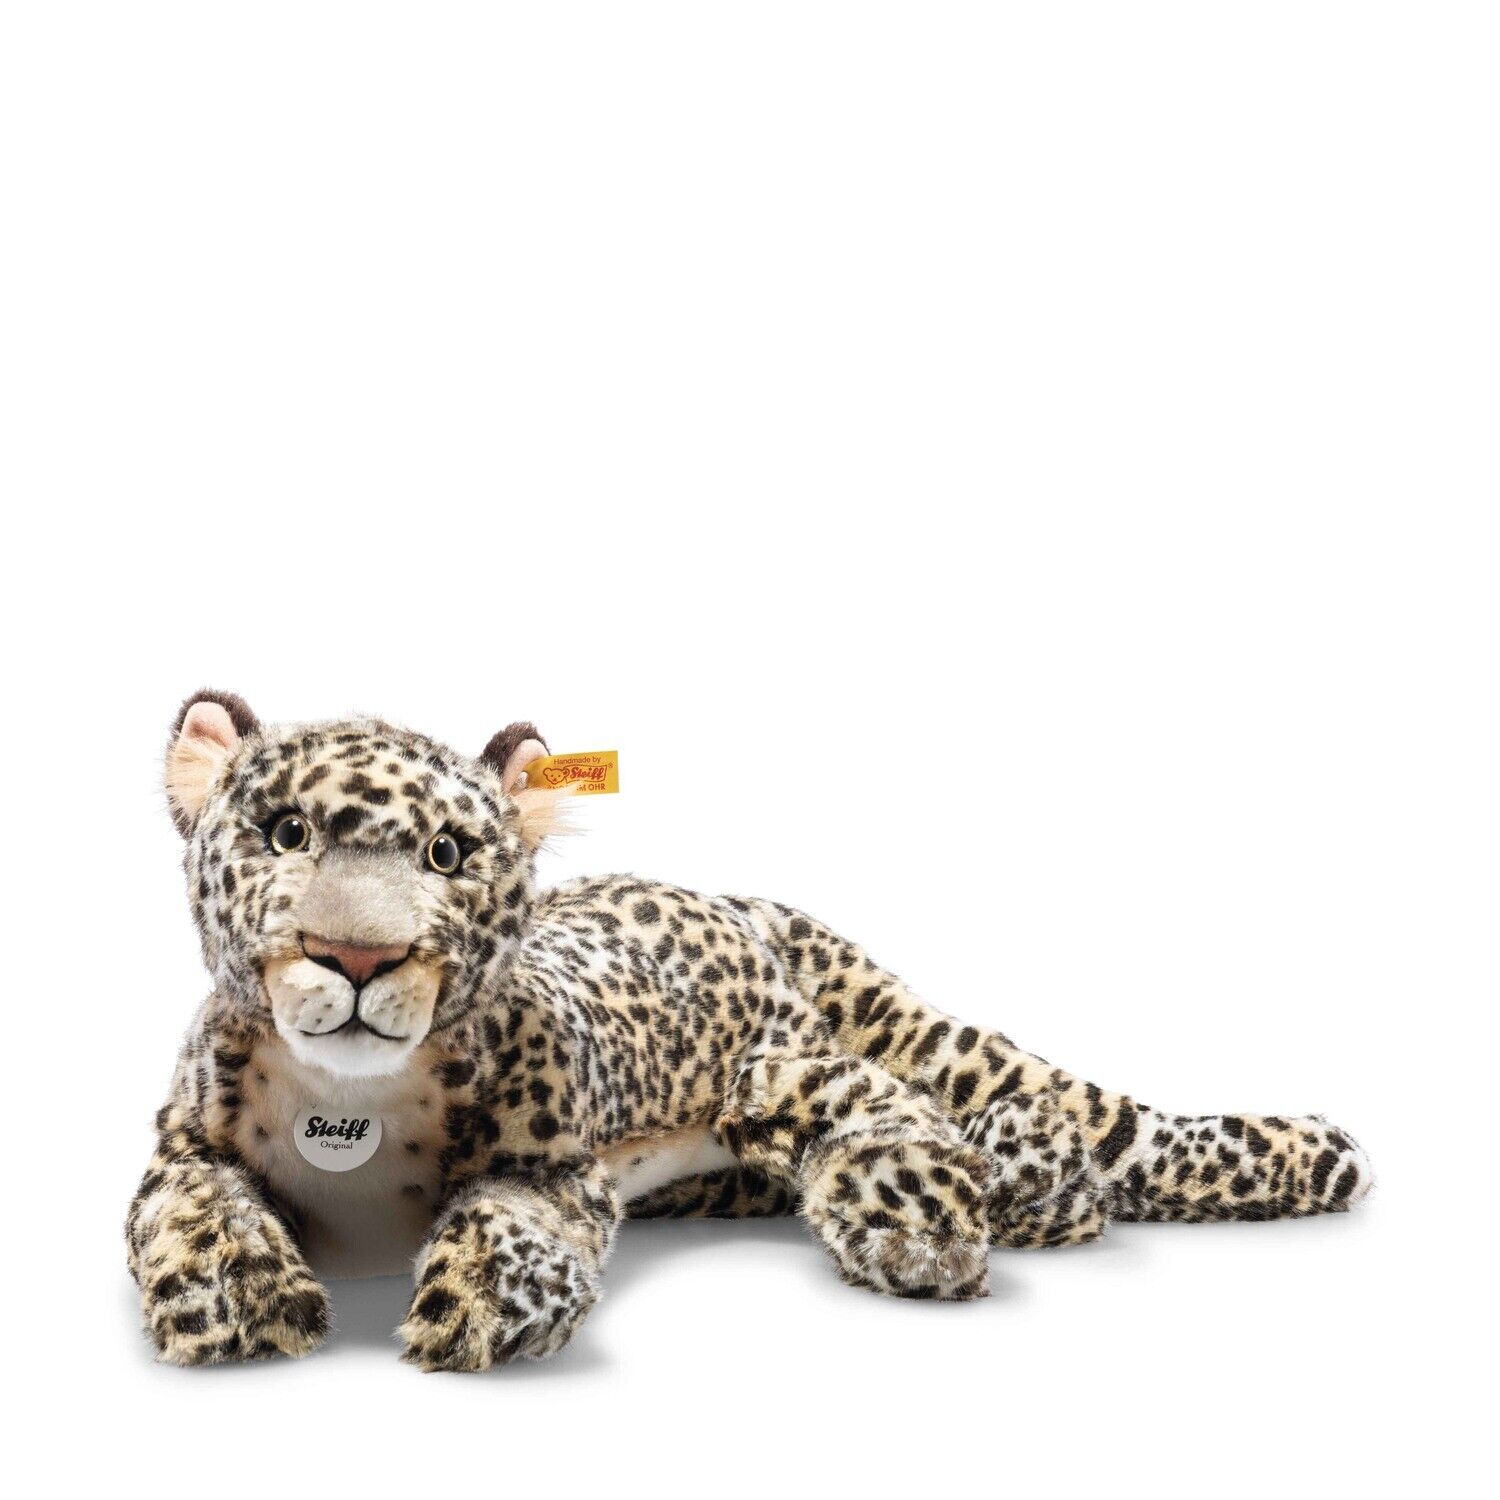 STEIFF Parrdy Leopard 36 cm beige/braun gefleckt 067518 - in Küze wieder lieferbar - für Kinder und Sammler